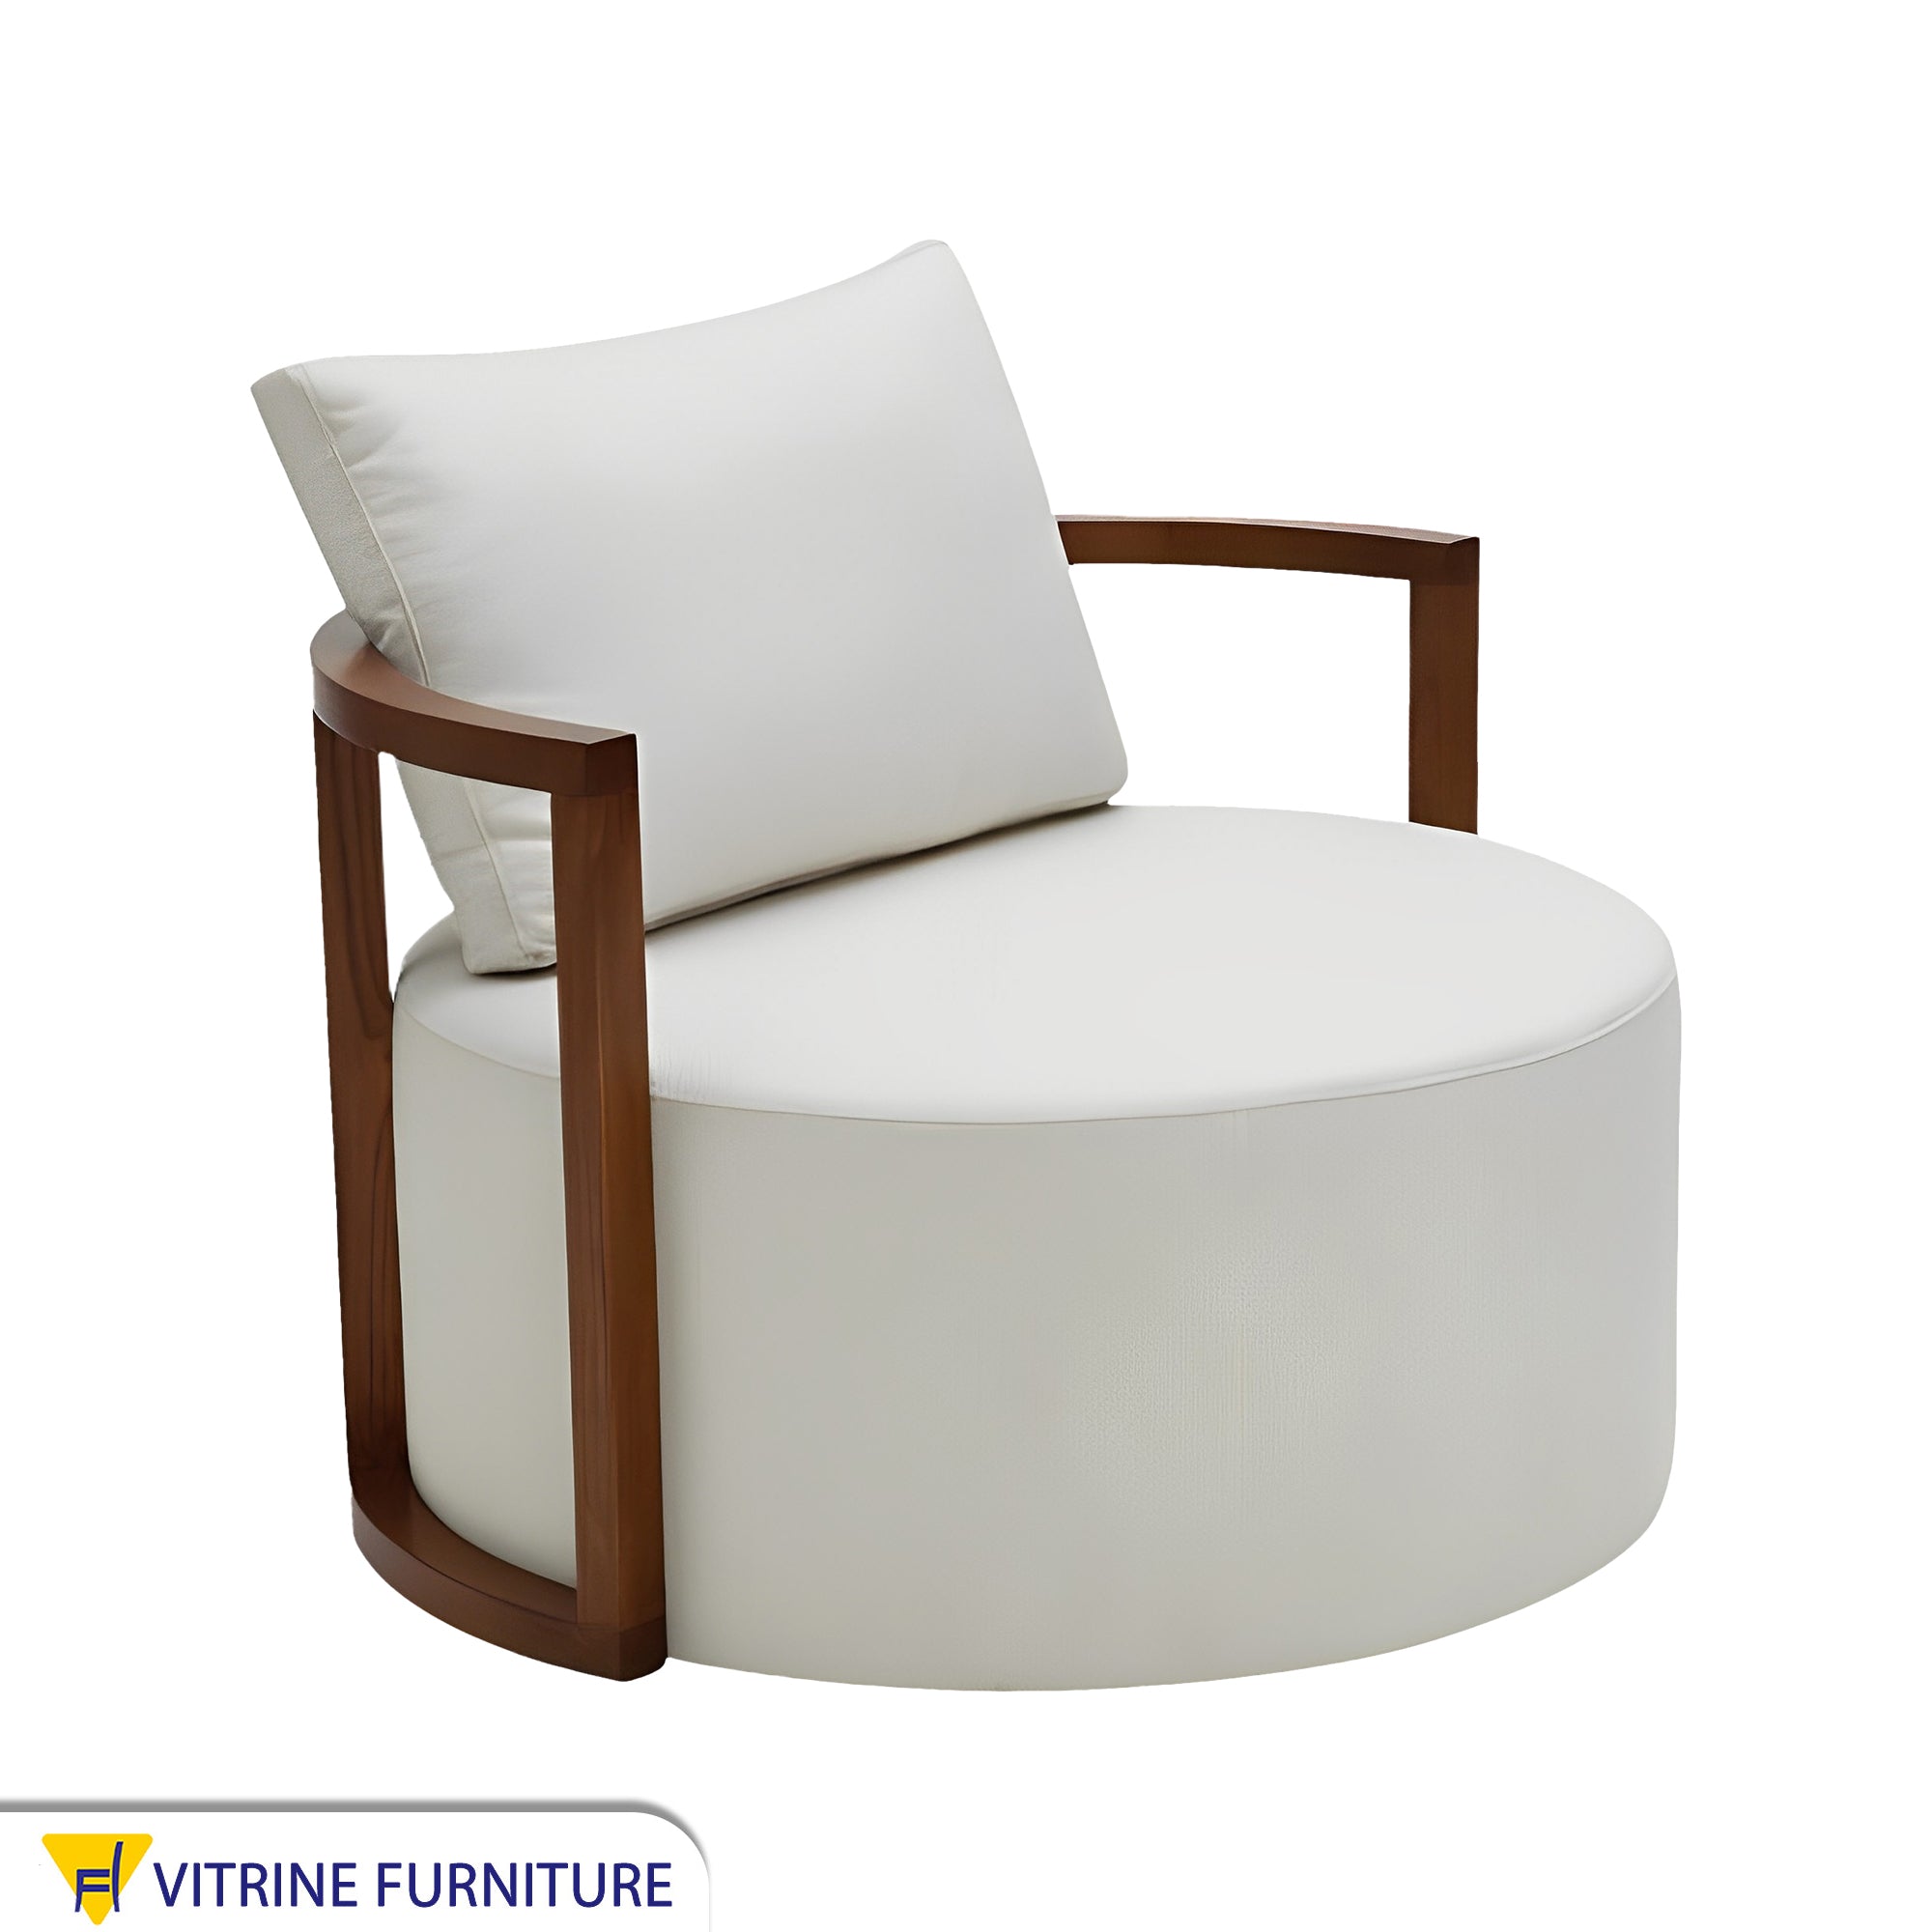 White round chair